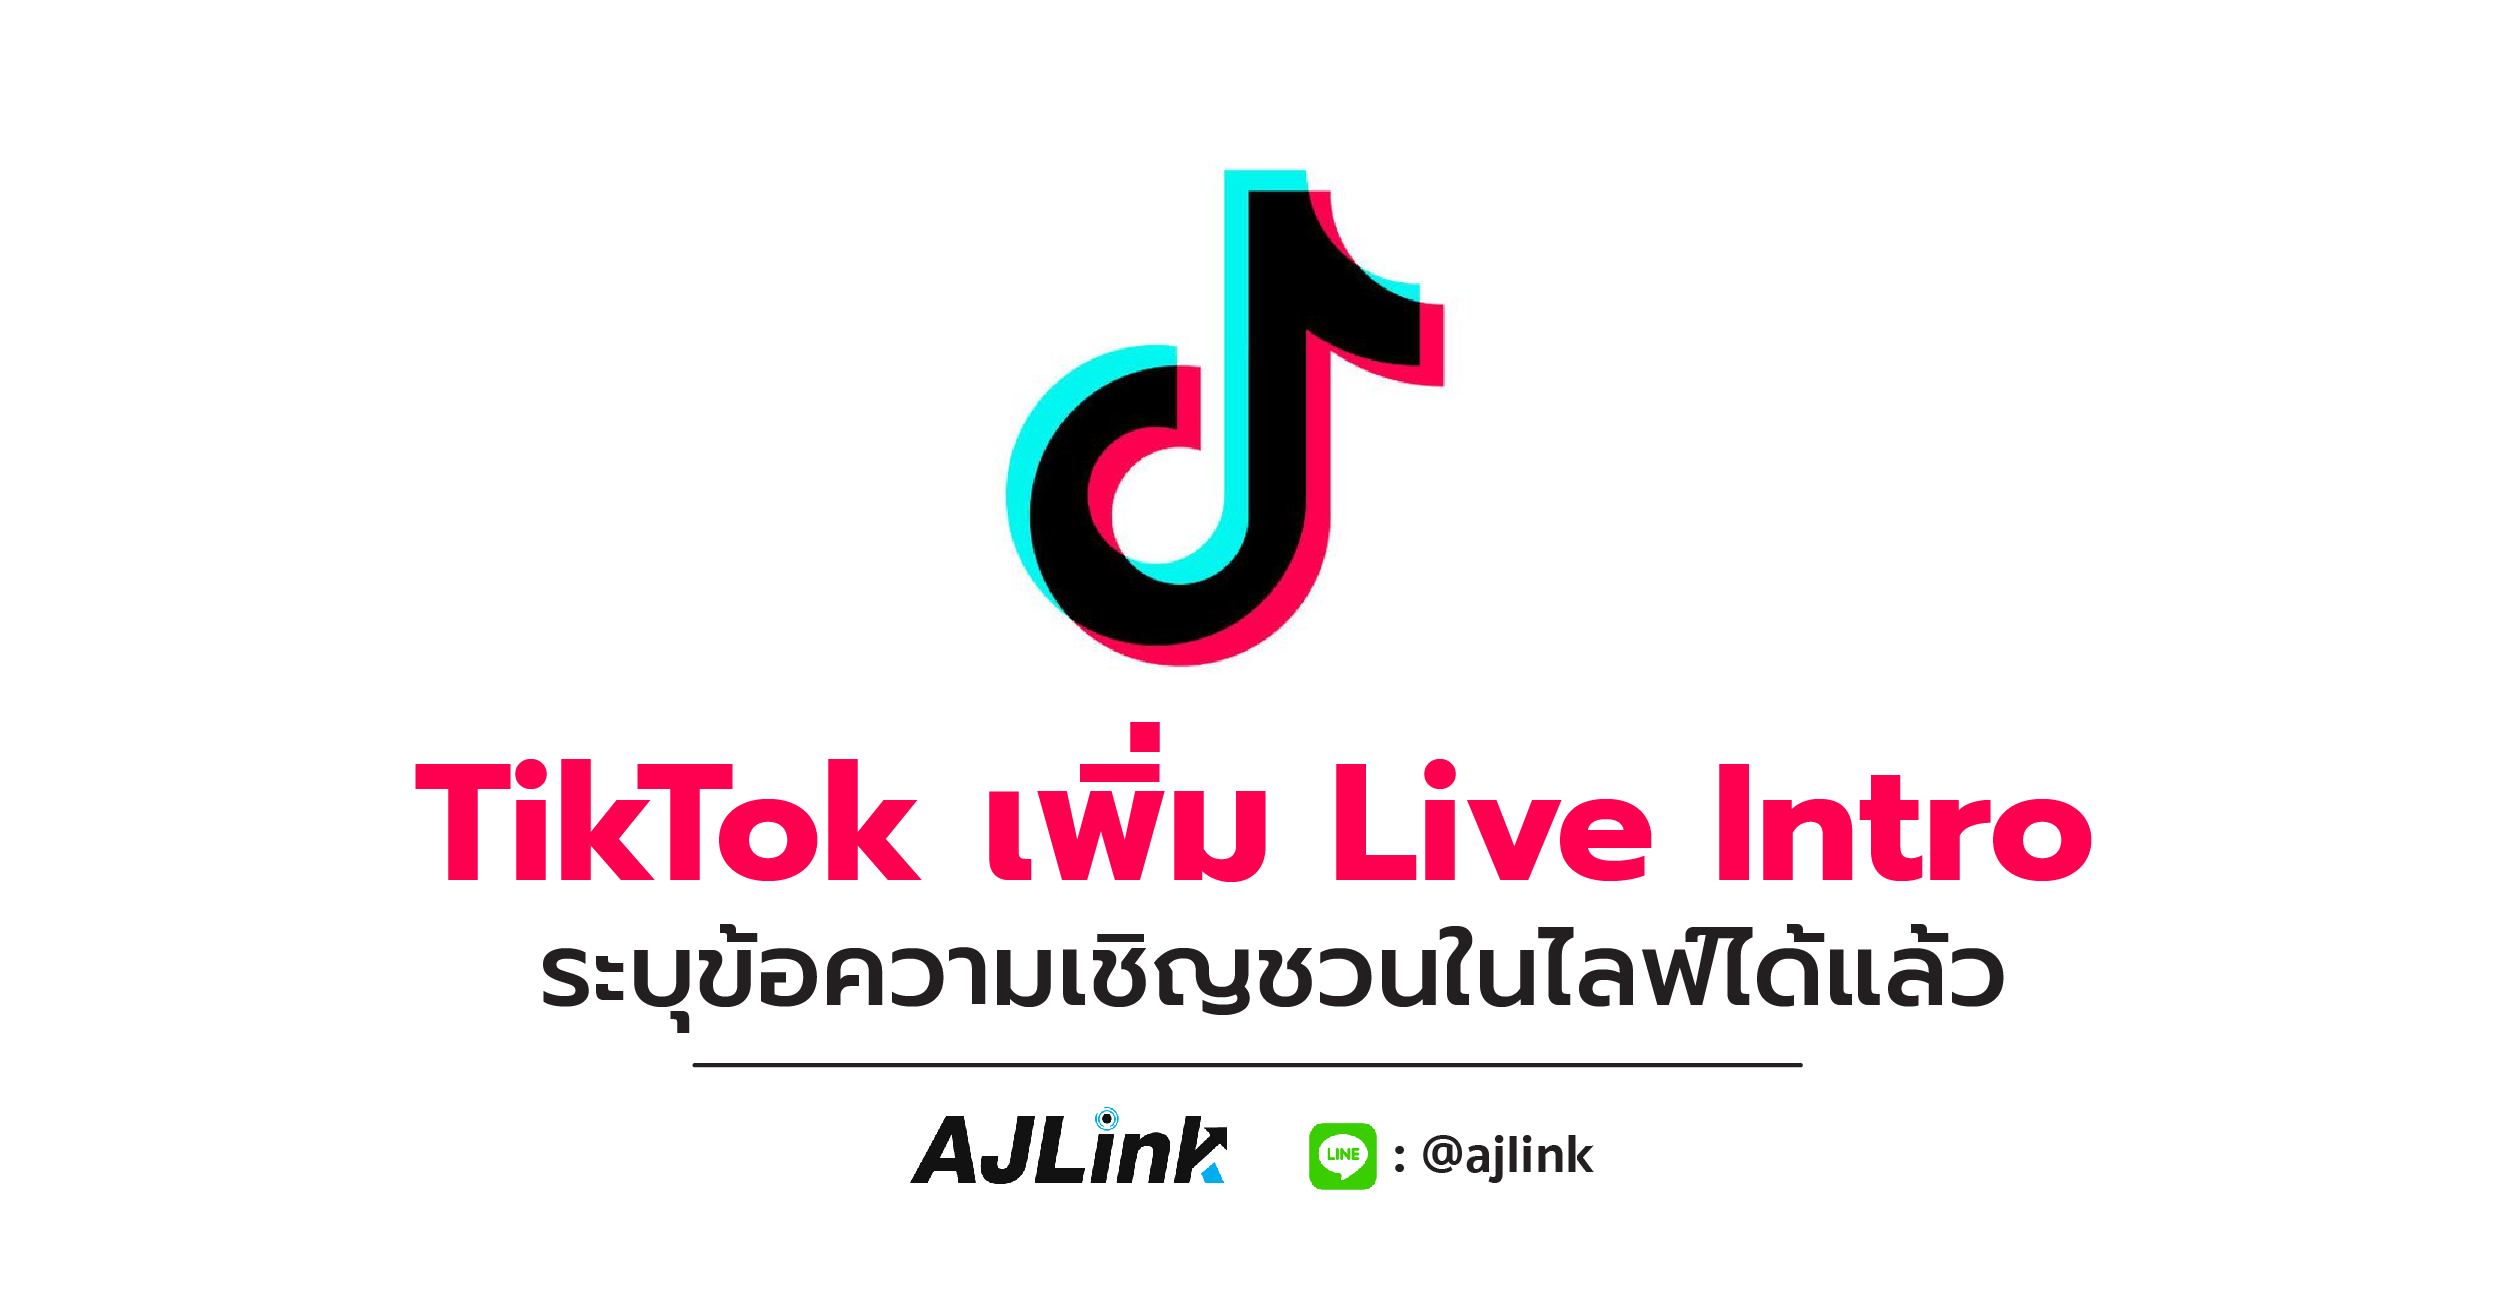 TikTok เพิ่ม Live Intro ระบุข้อความเชิญชวนในไลฟ์ได้แล้ว